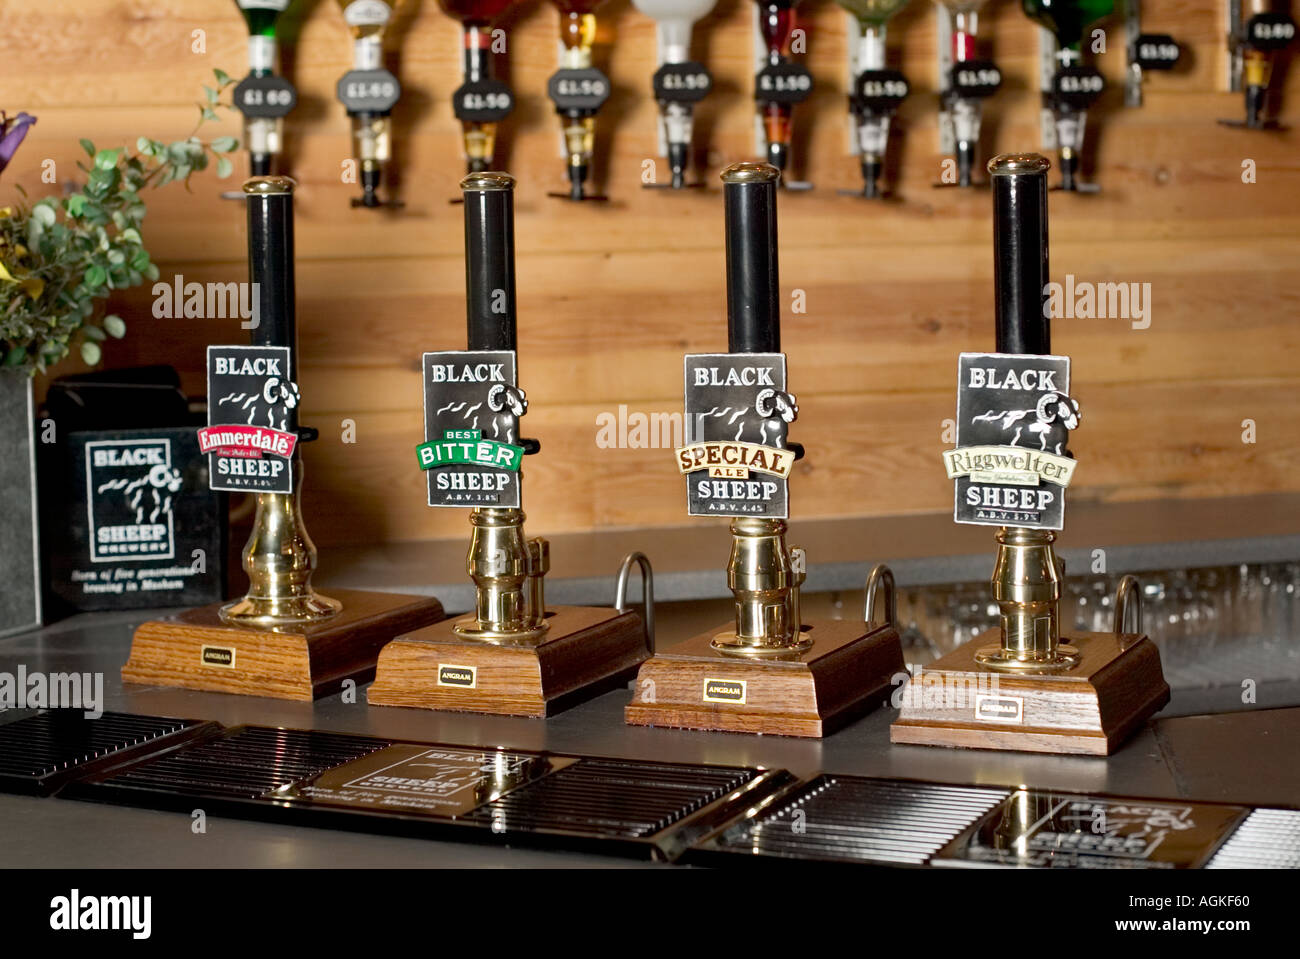 Zapfanlagen auf eine Pub-Bar-Tresen mit Optik im Hintergrund bei Black Sheep Brewery, Yorkshire, England, UK Stockfoto